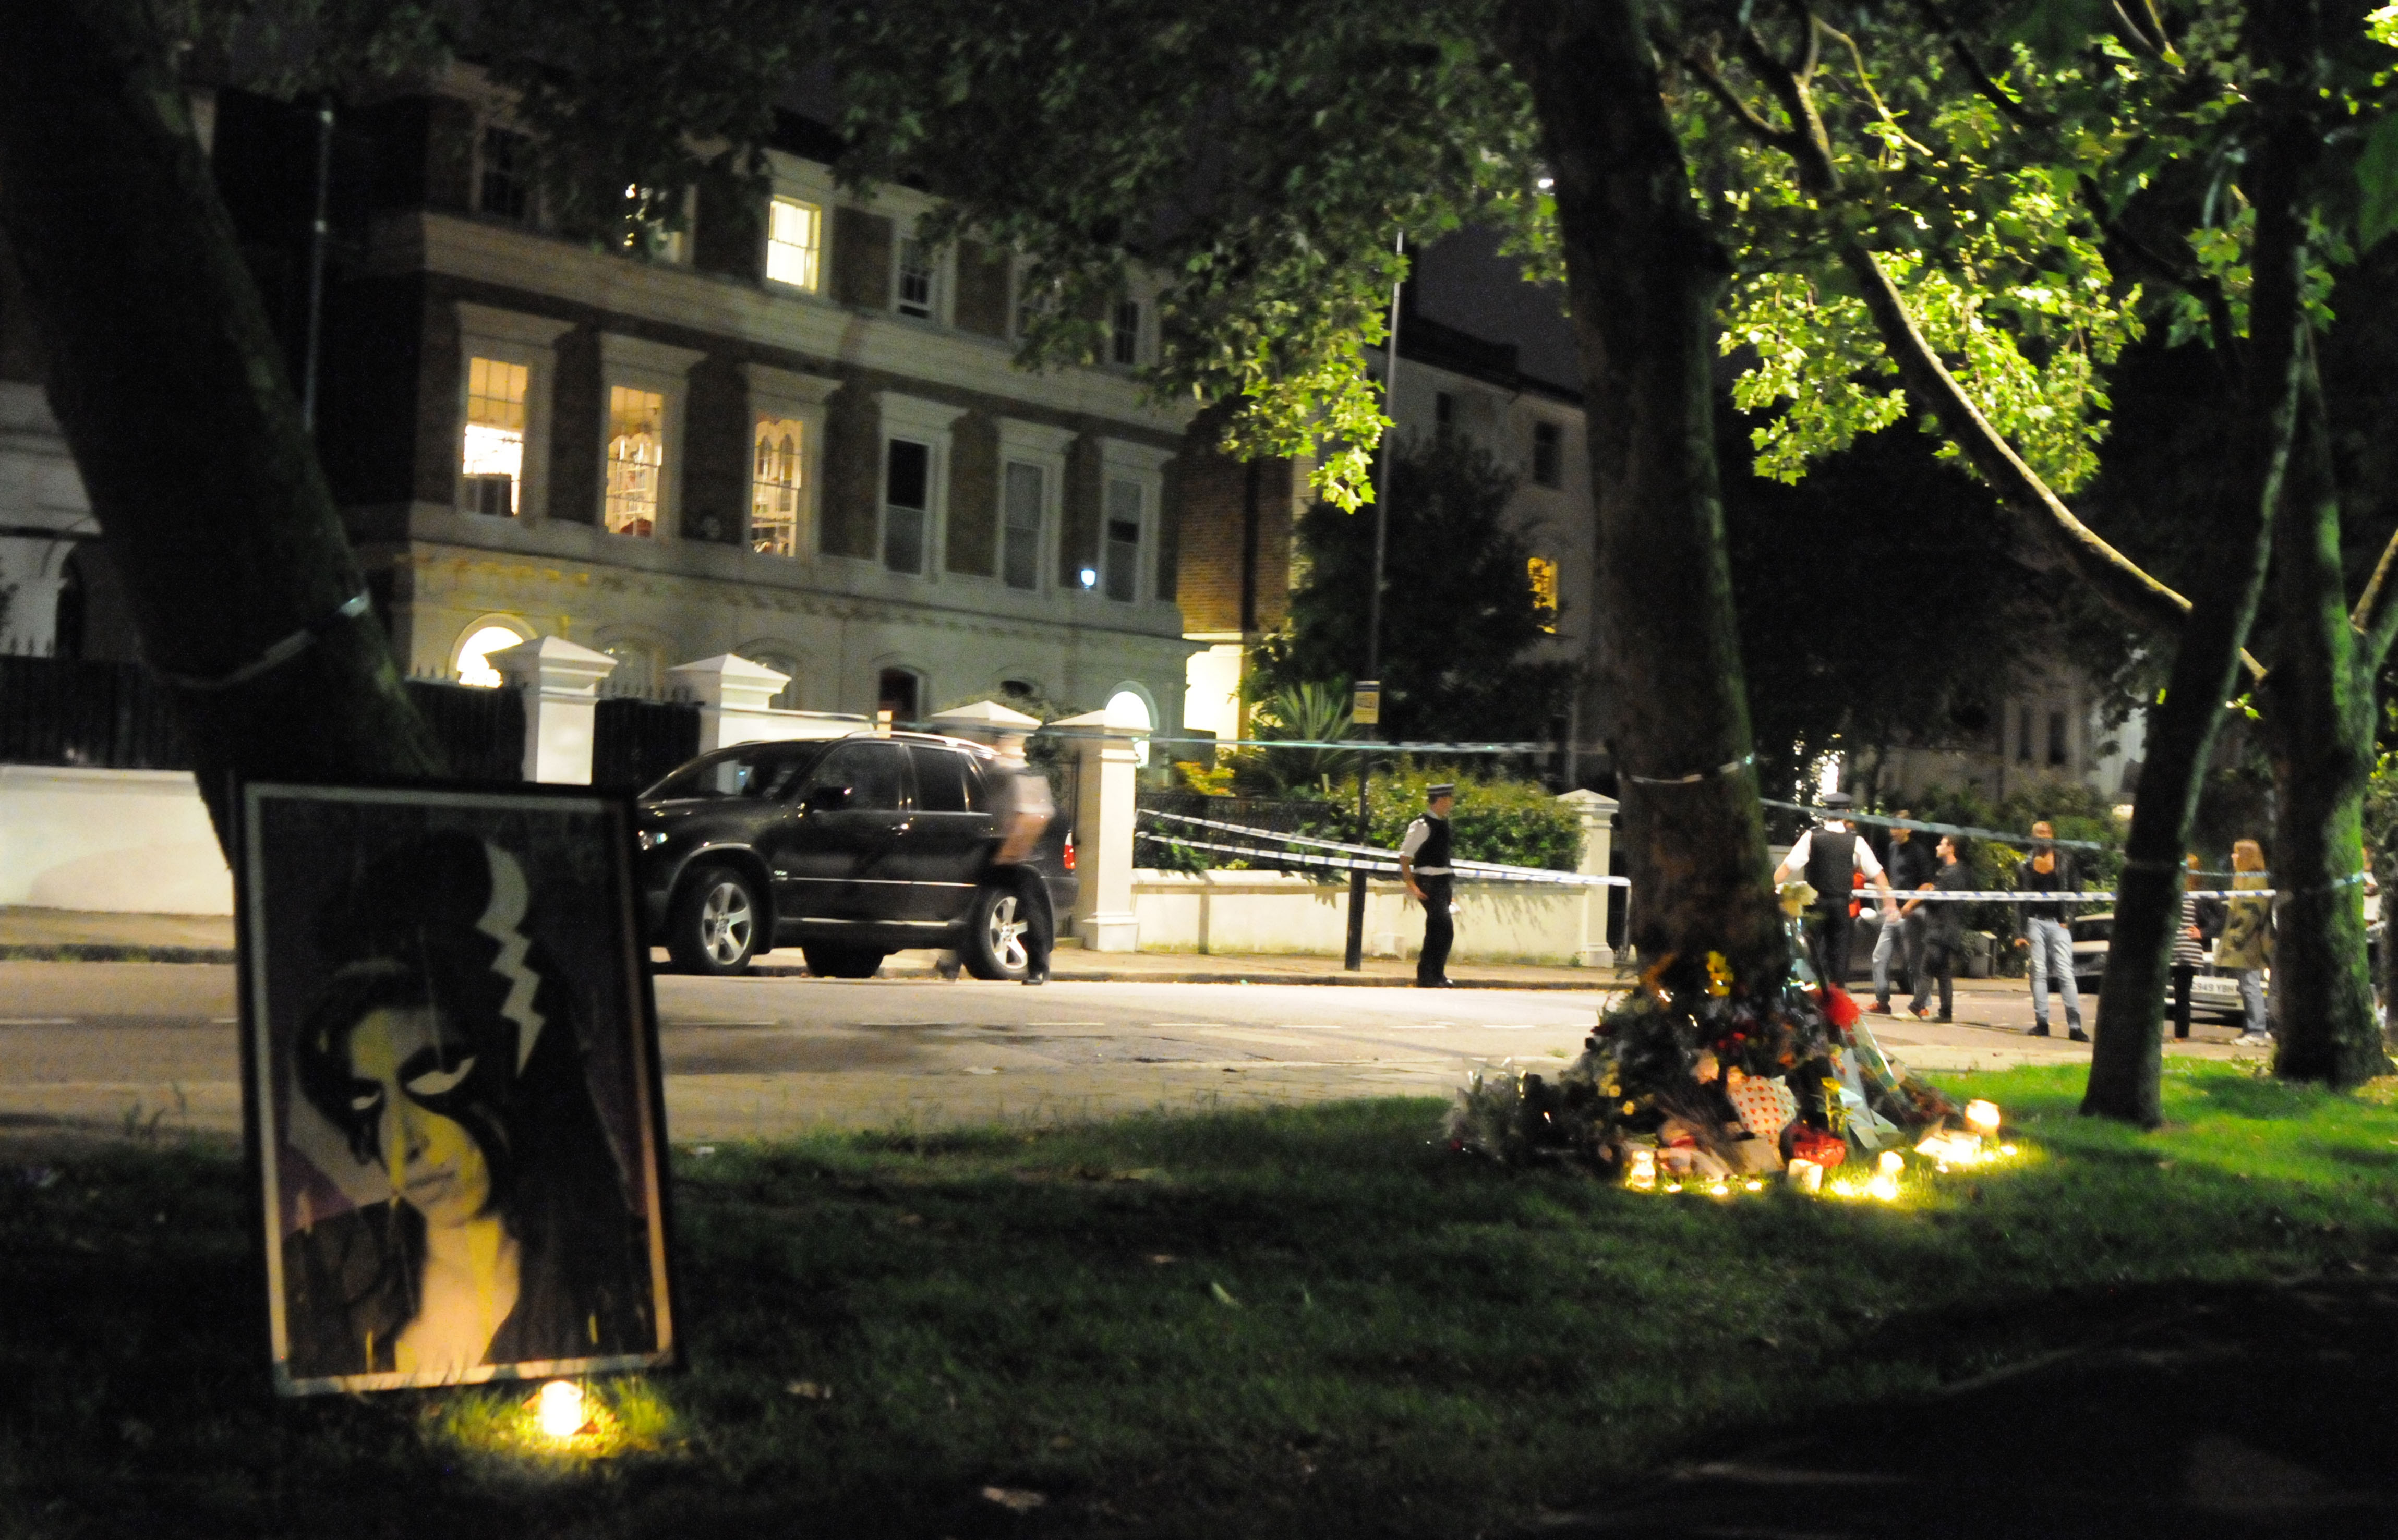 23 luglio 2011. Veglia funebre davanti alla casa di Camden Square in cui Amy Winehouse è stata trovata morta alle 15:53 di quello stesso giorno 